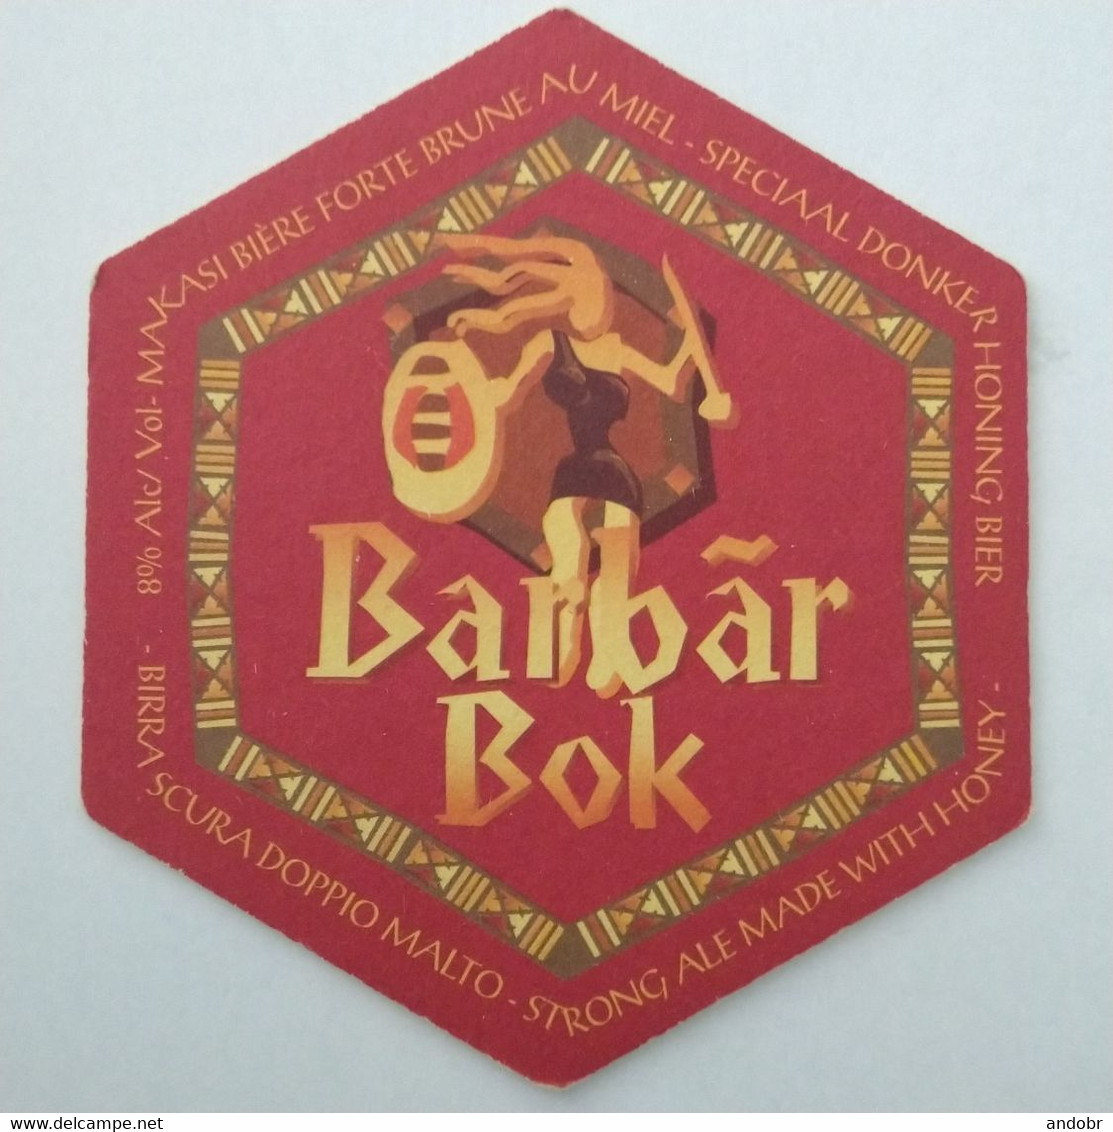 Druif extract Koppeling Beer mats - Beer mat/coaster BARBAR BOK (Belgium)